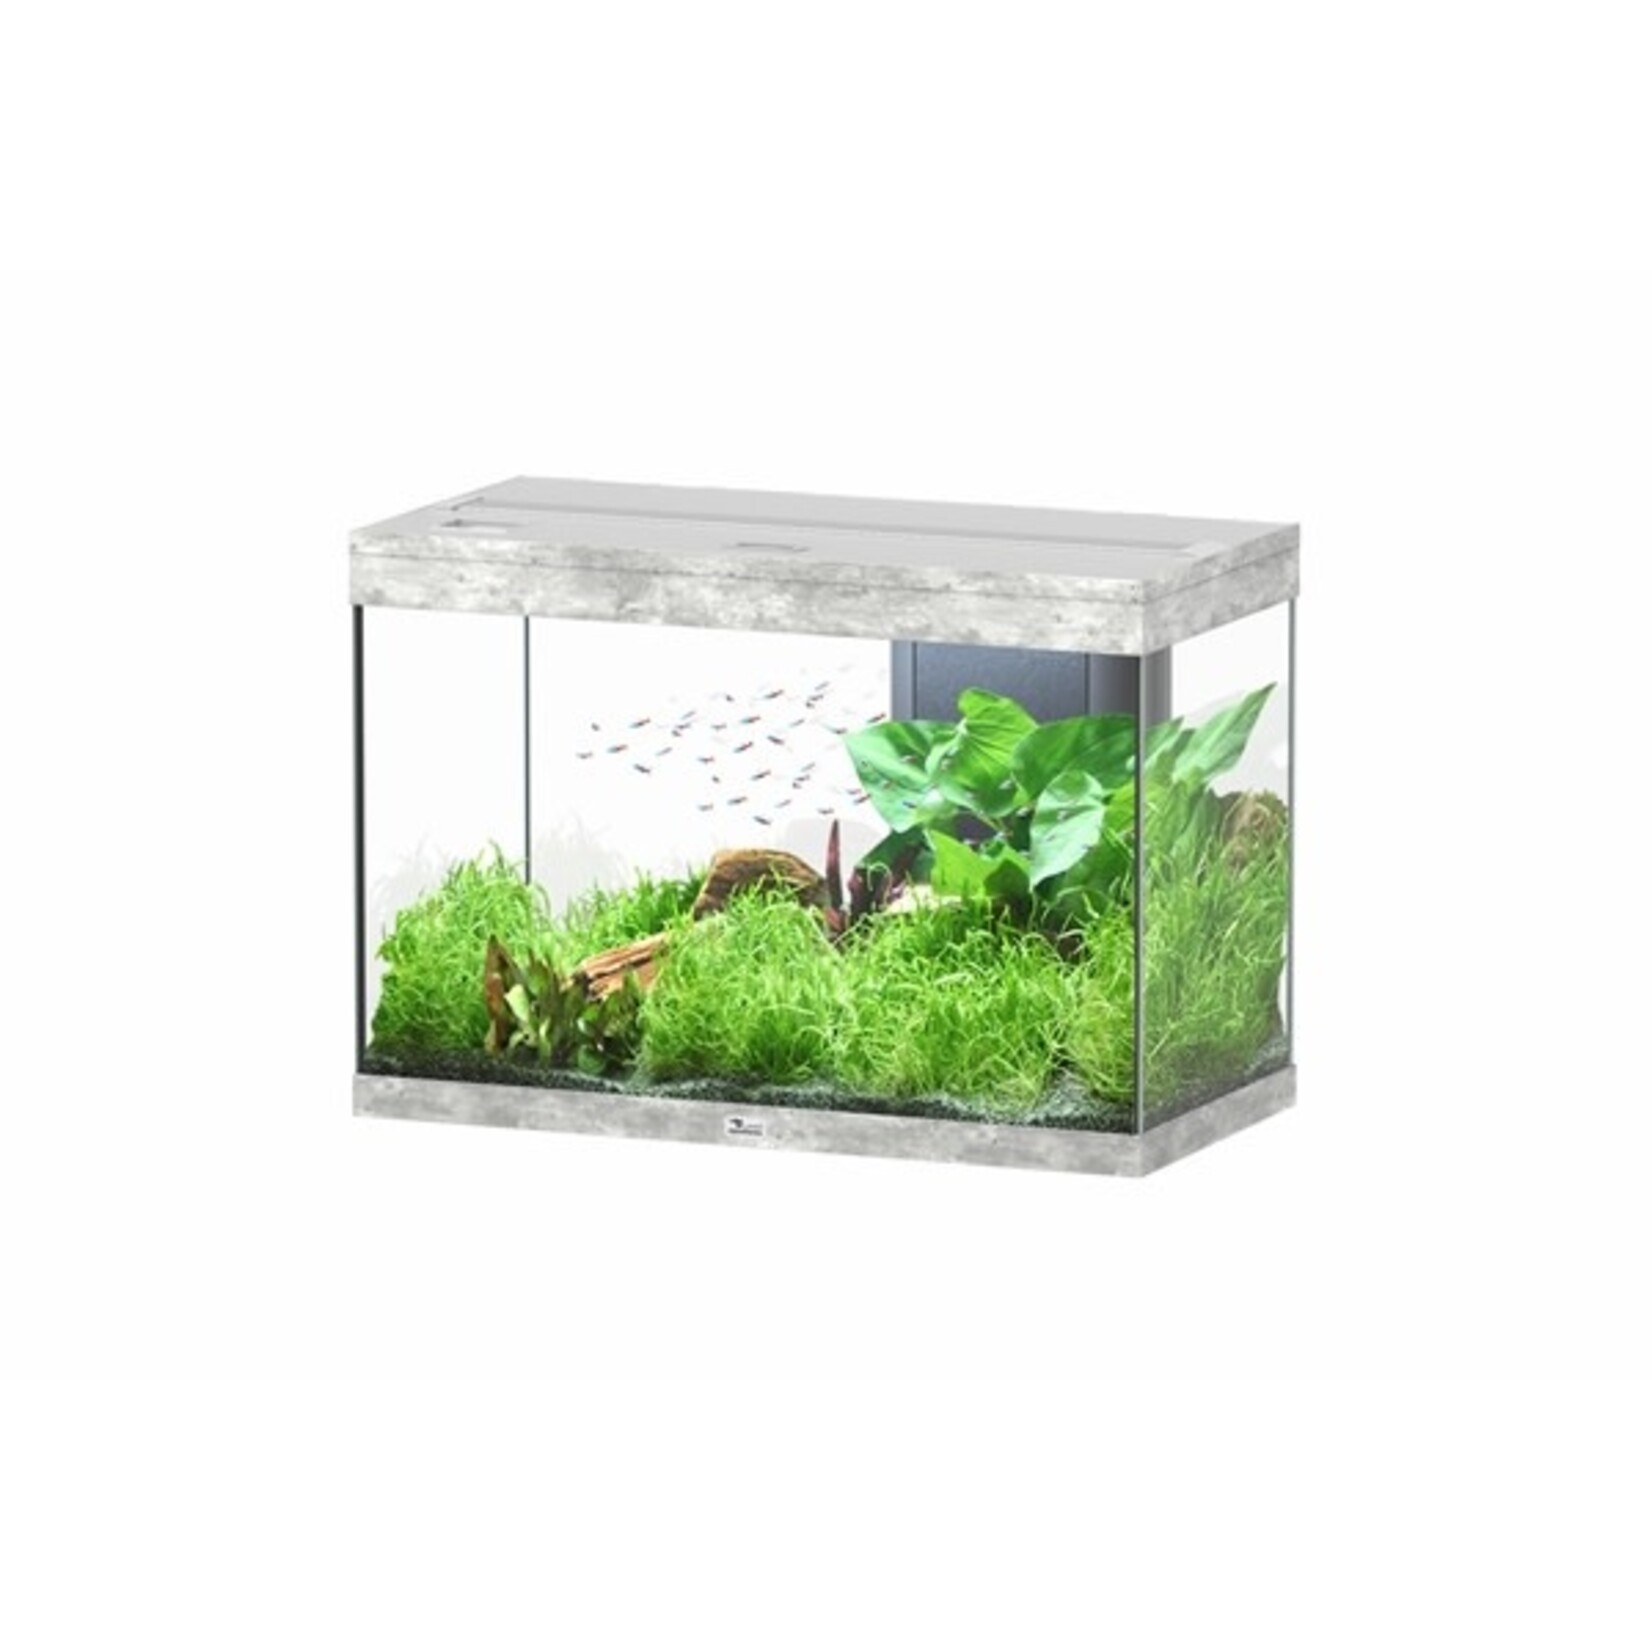 Aquatlantis Aquarium splendid 80 biobox beton-059